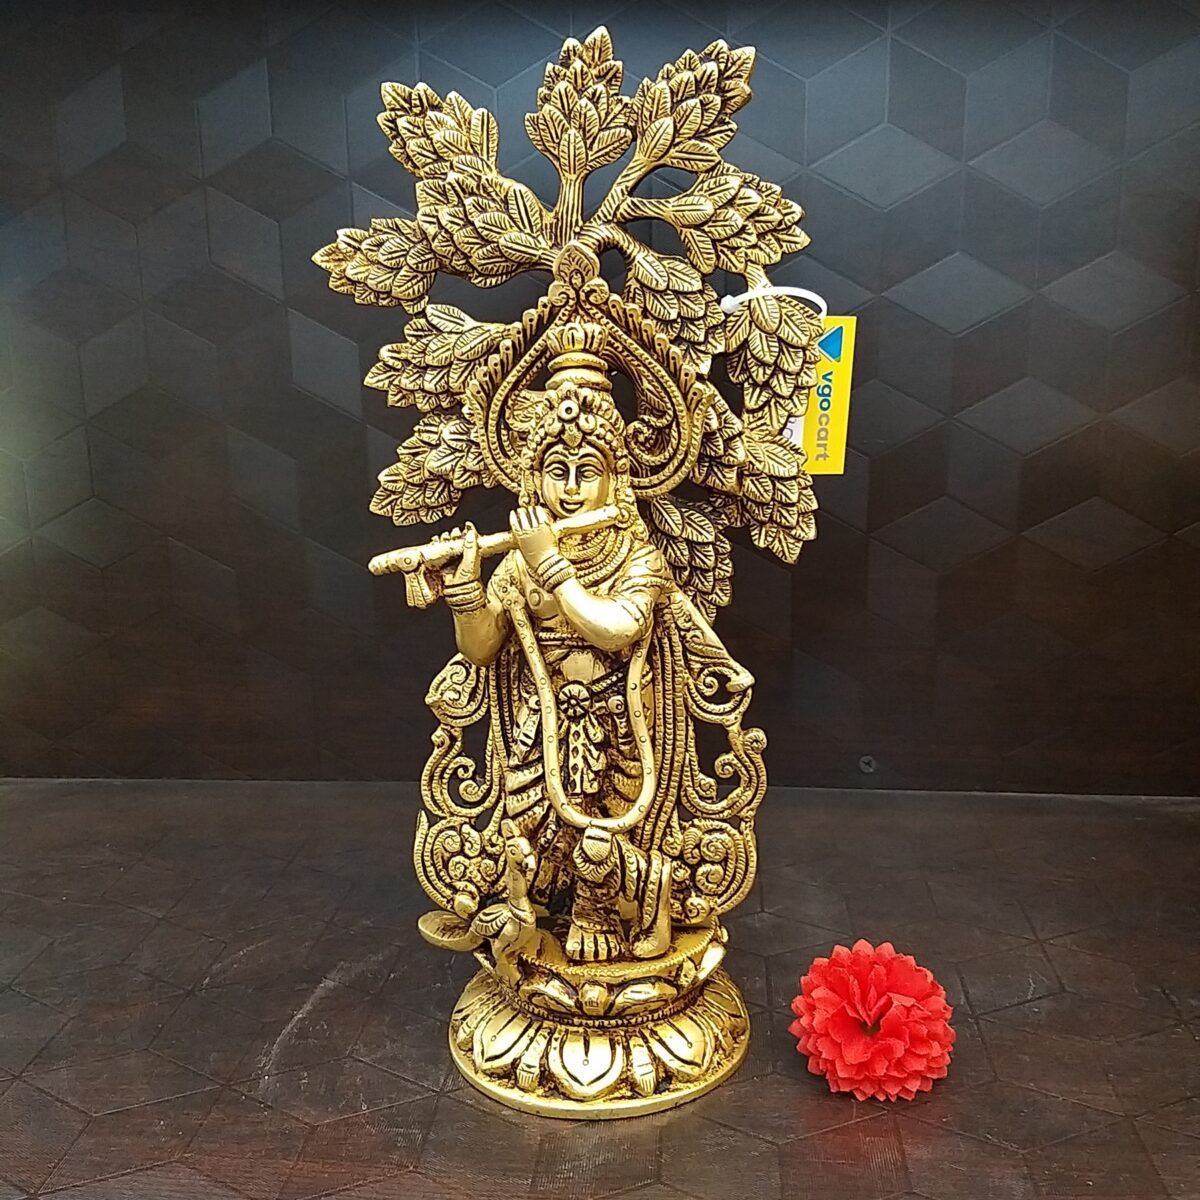 brass tree krishna idol big home decor pooja items hindu god statues gift buy online india